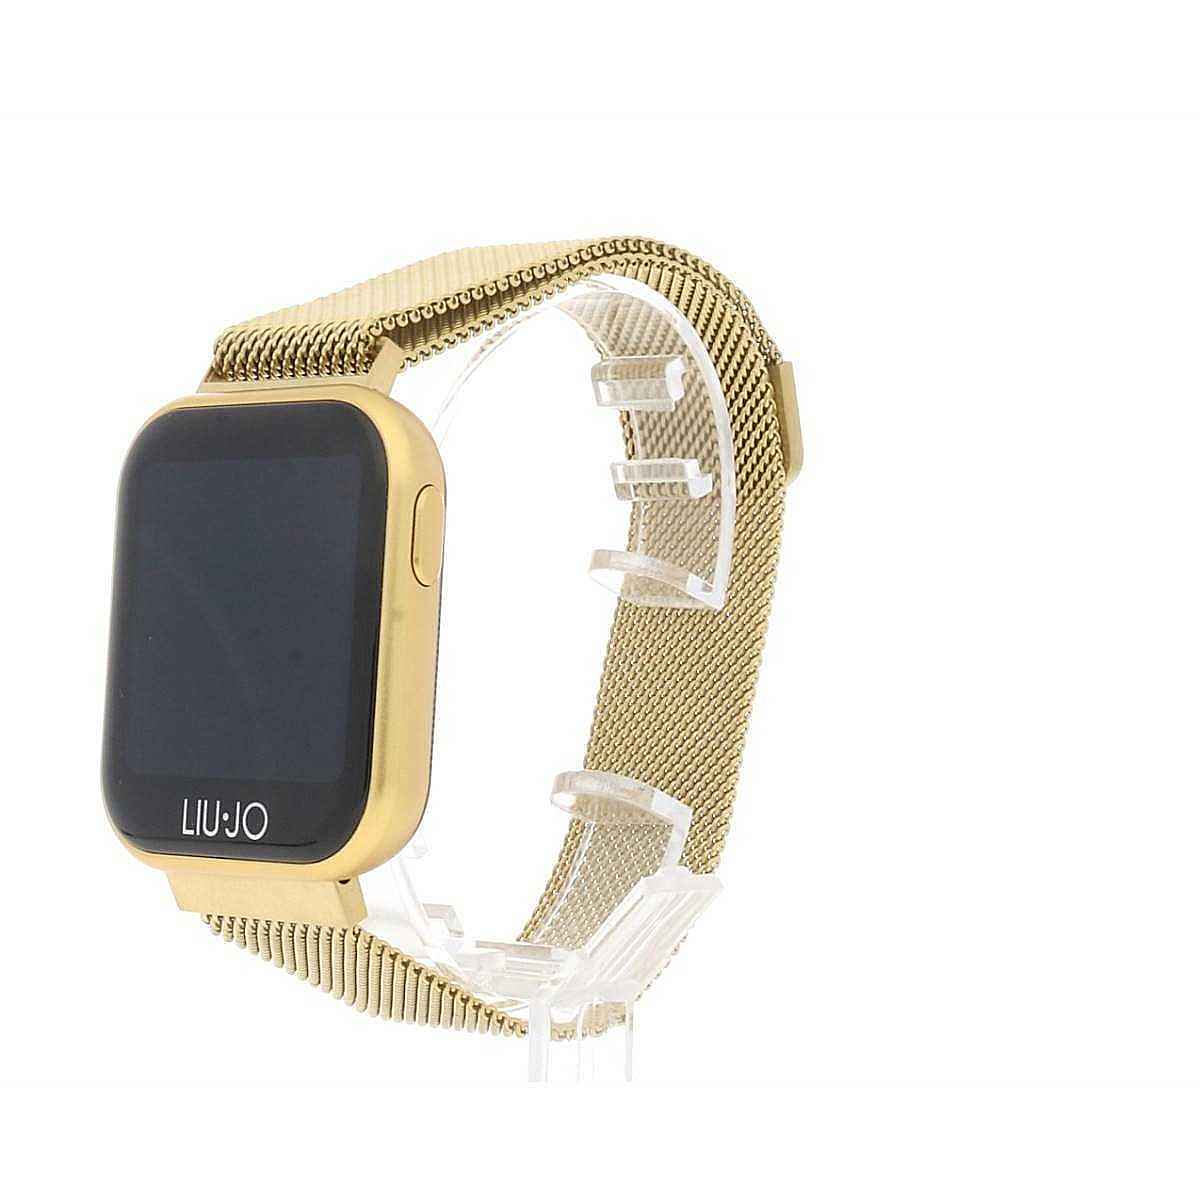 Smartwatch Unisex LiuJo Luxury Gold - SWLJ004